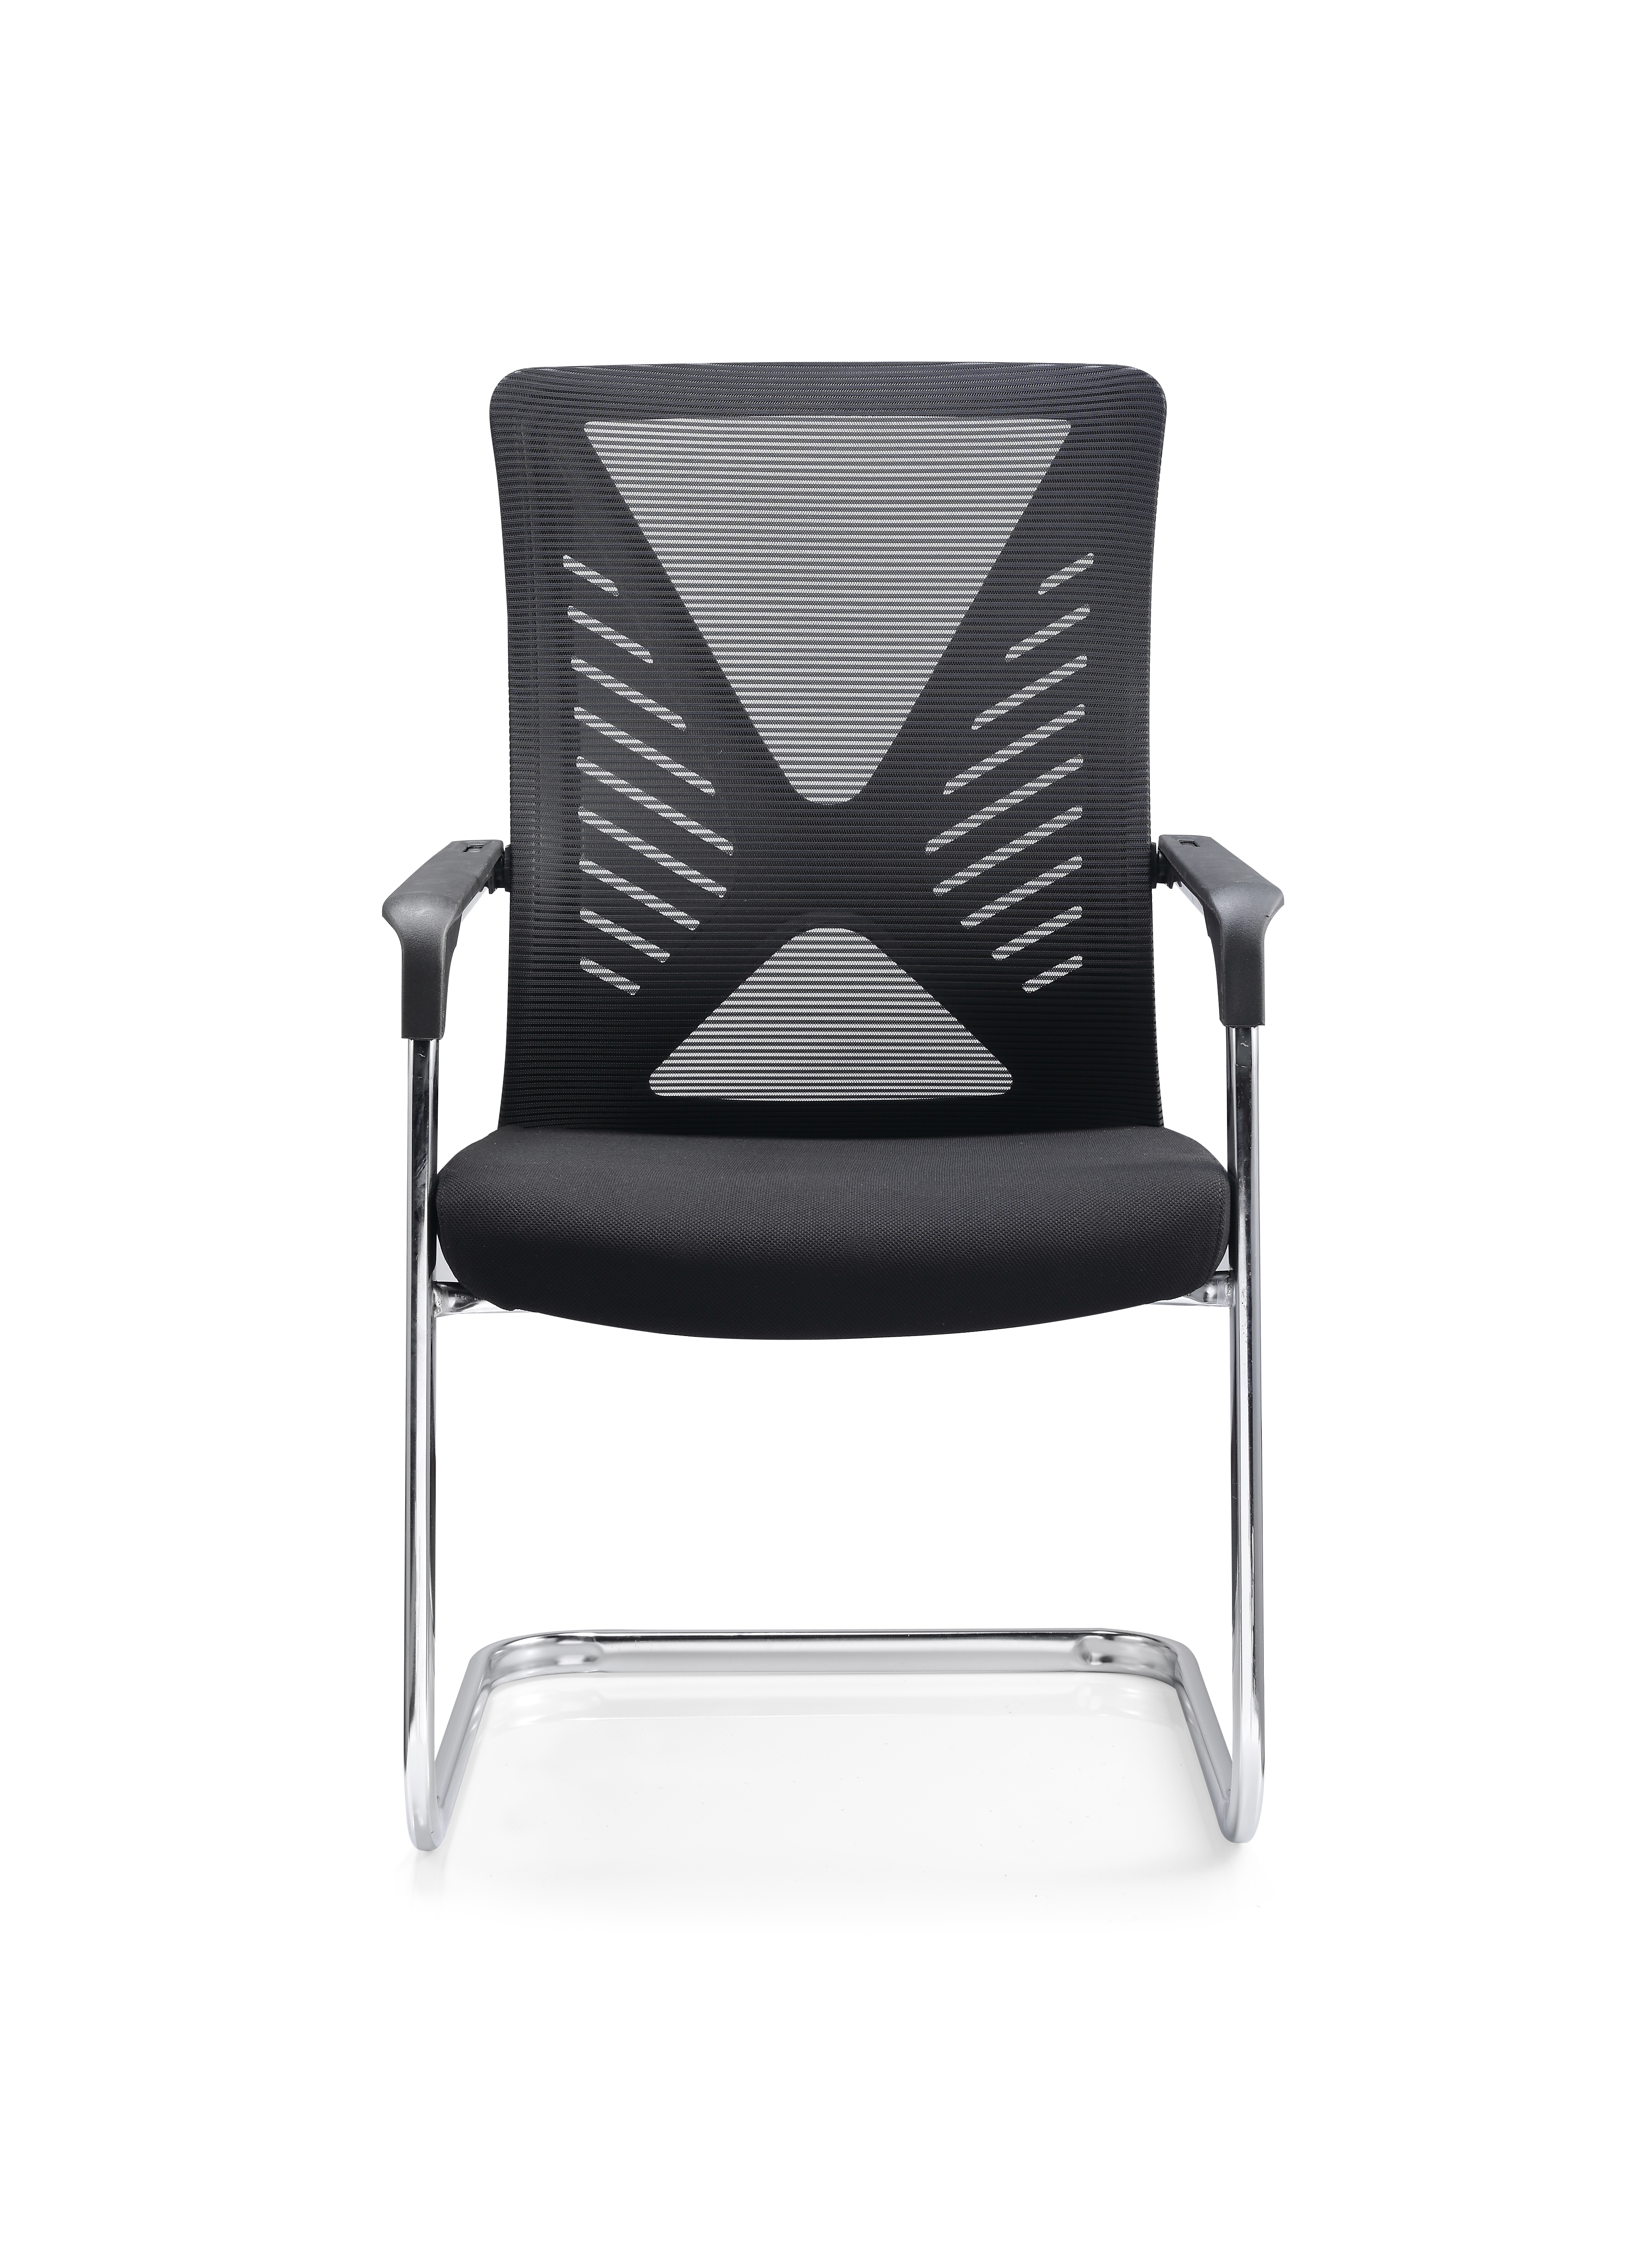 Newcity 559C 办公家具制造现代设计网背会议室访客椅简单扶手椅网访客椅供应商中国佛山